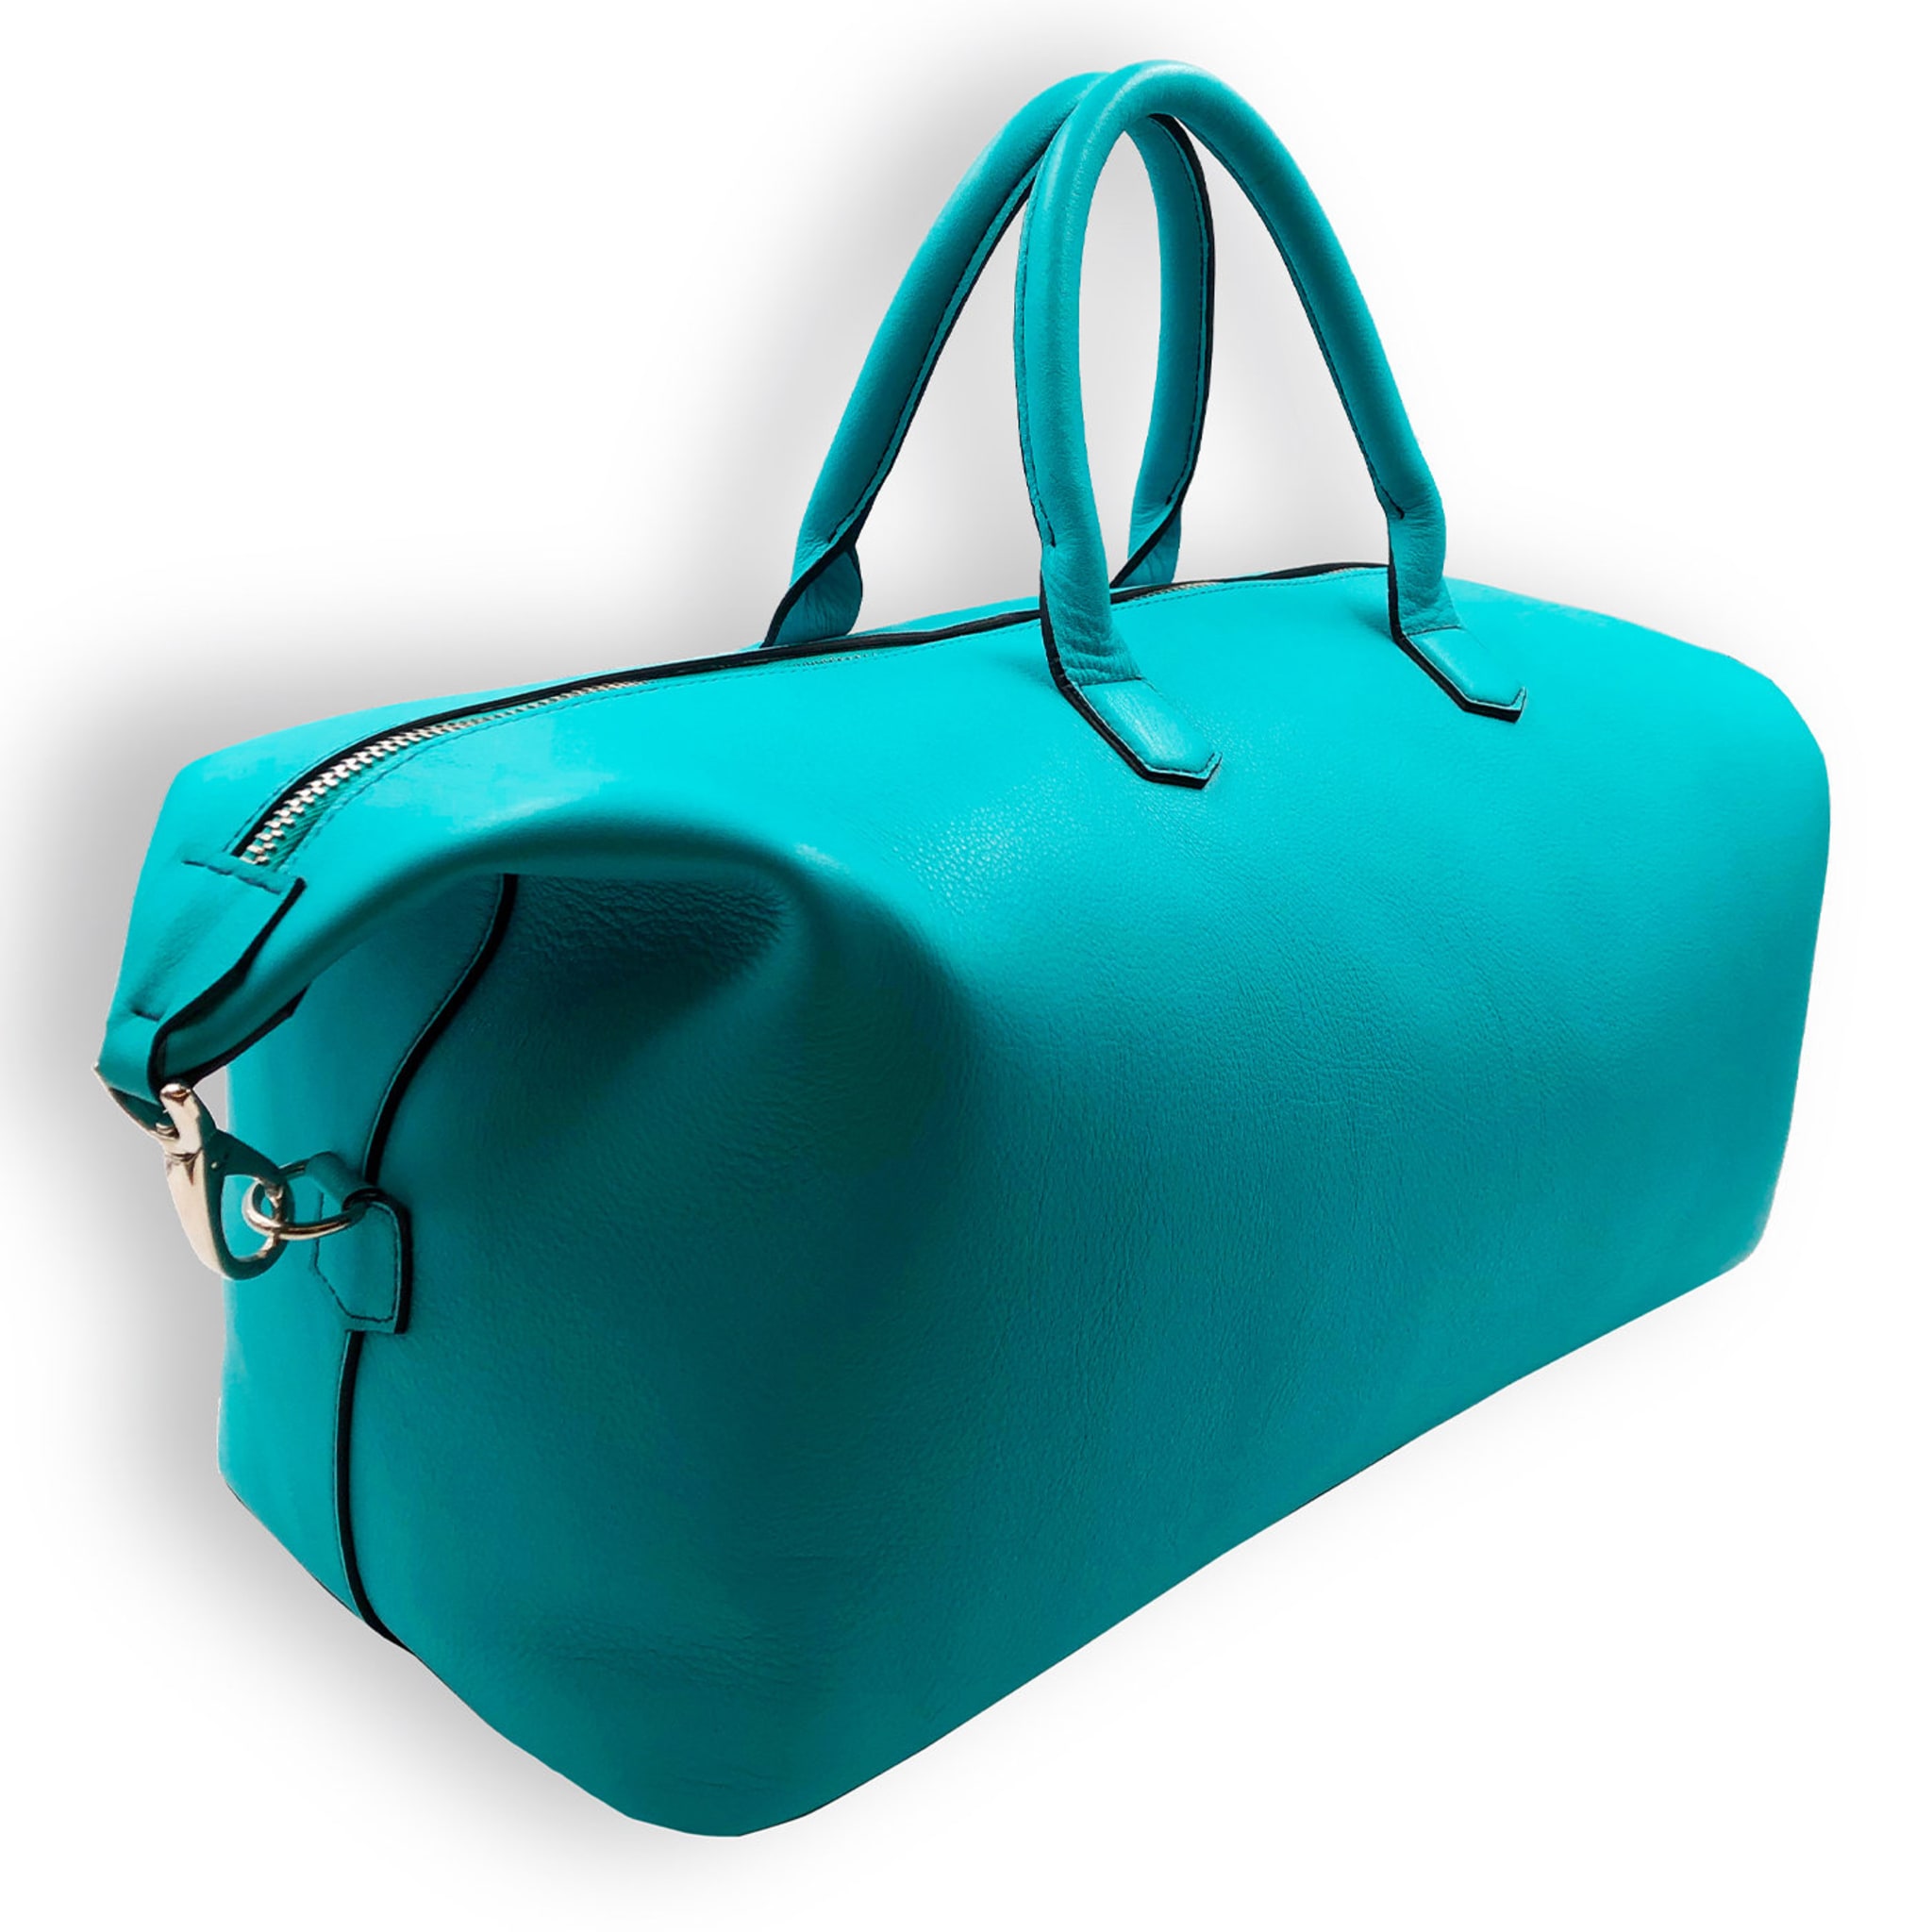 Turquoise Weekender Bag - Alternative view 1